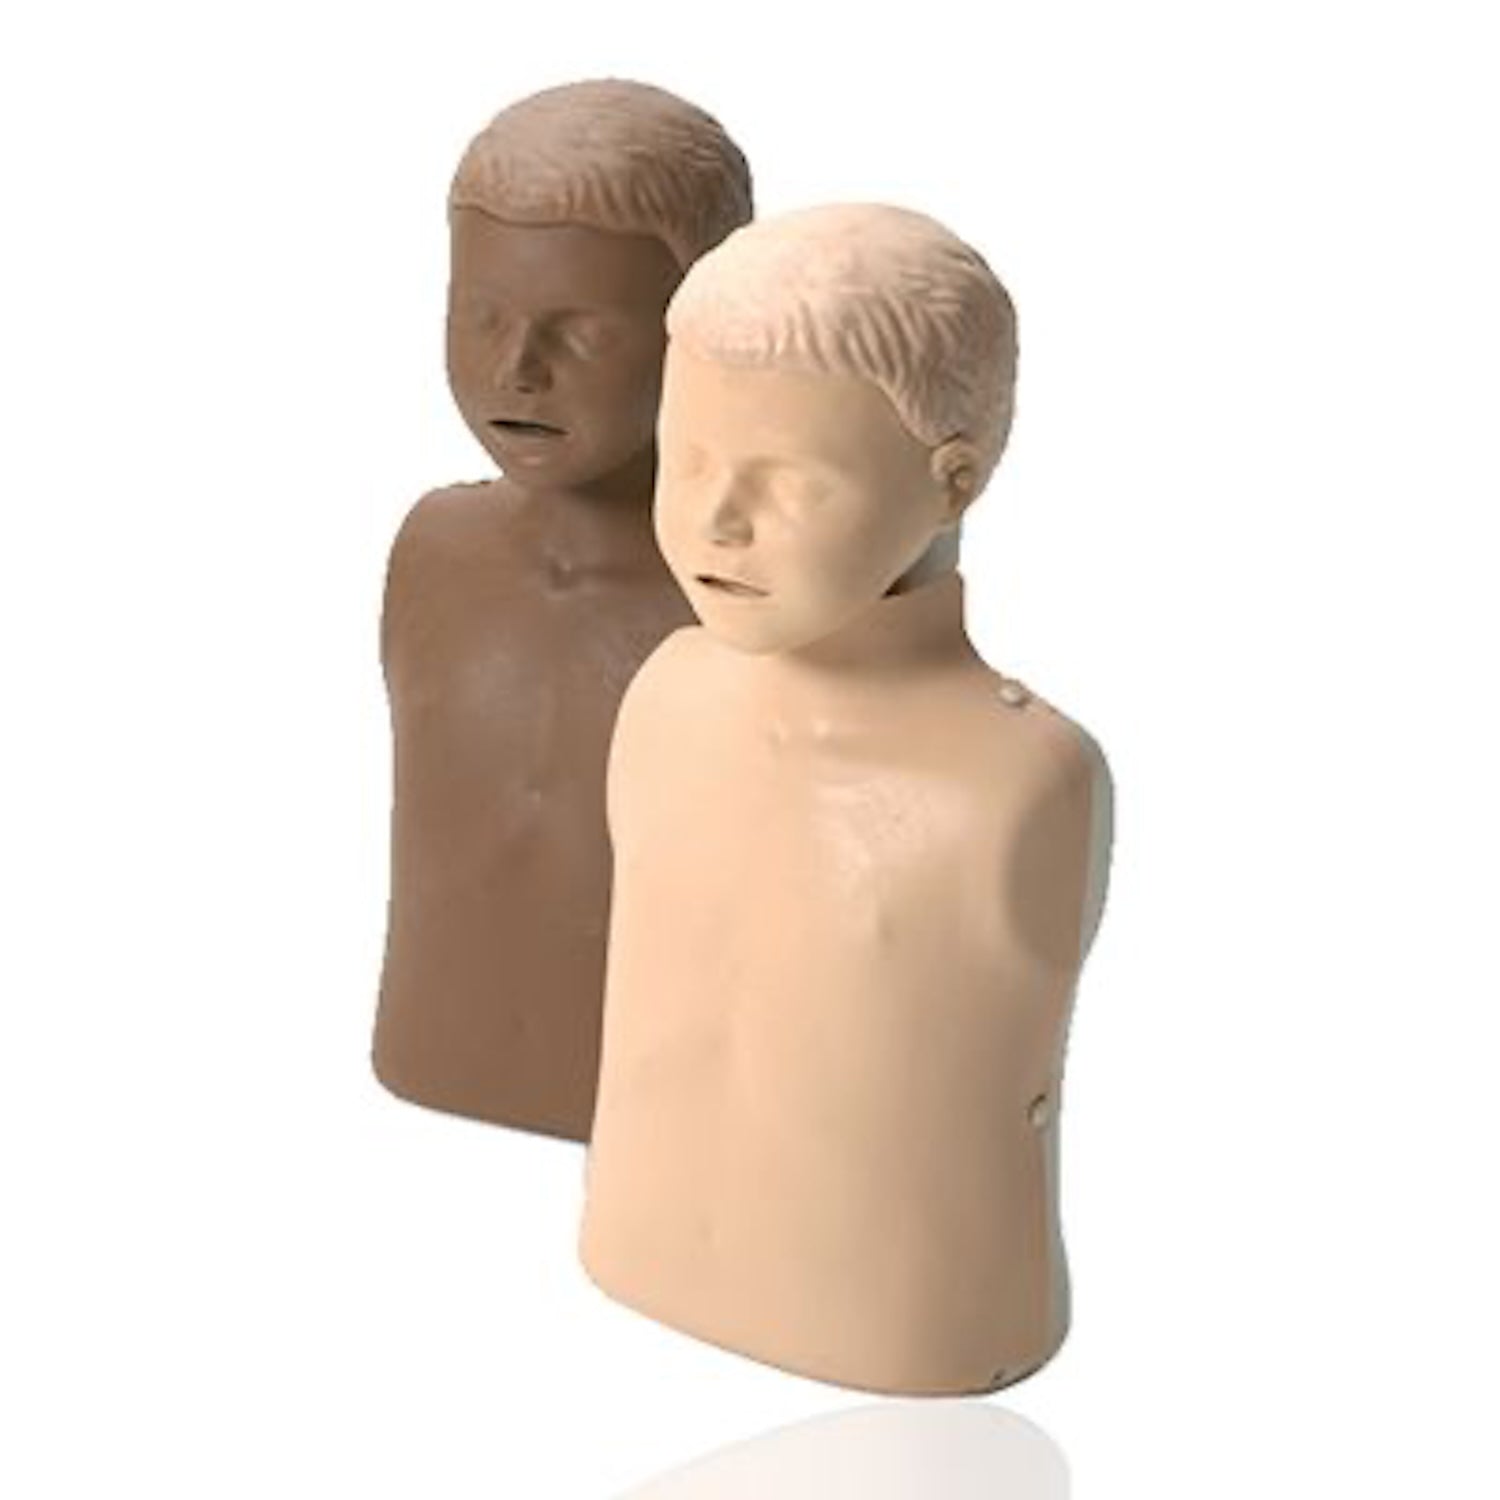 Little Junior Light Skin Child Mannequin CPR Trainer